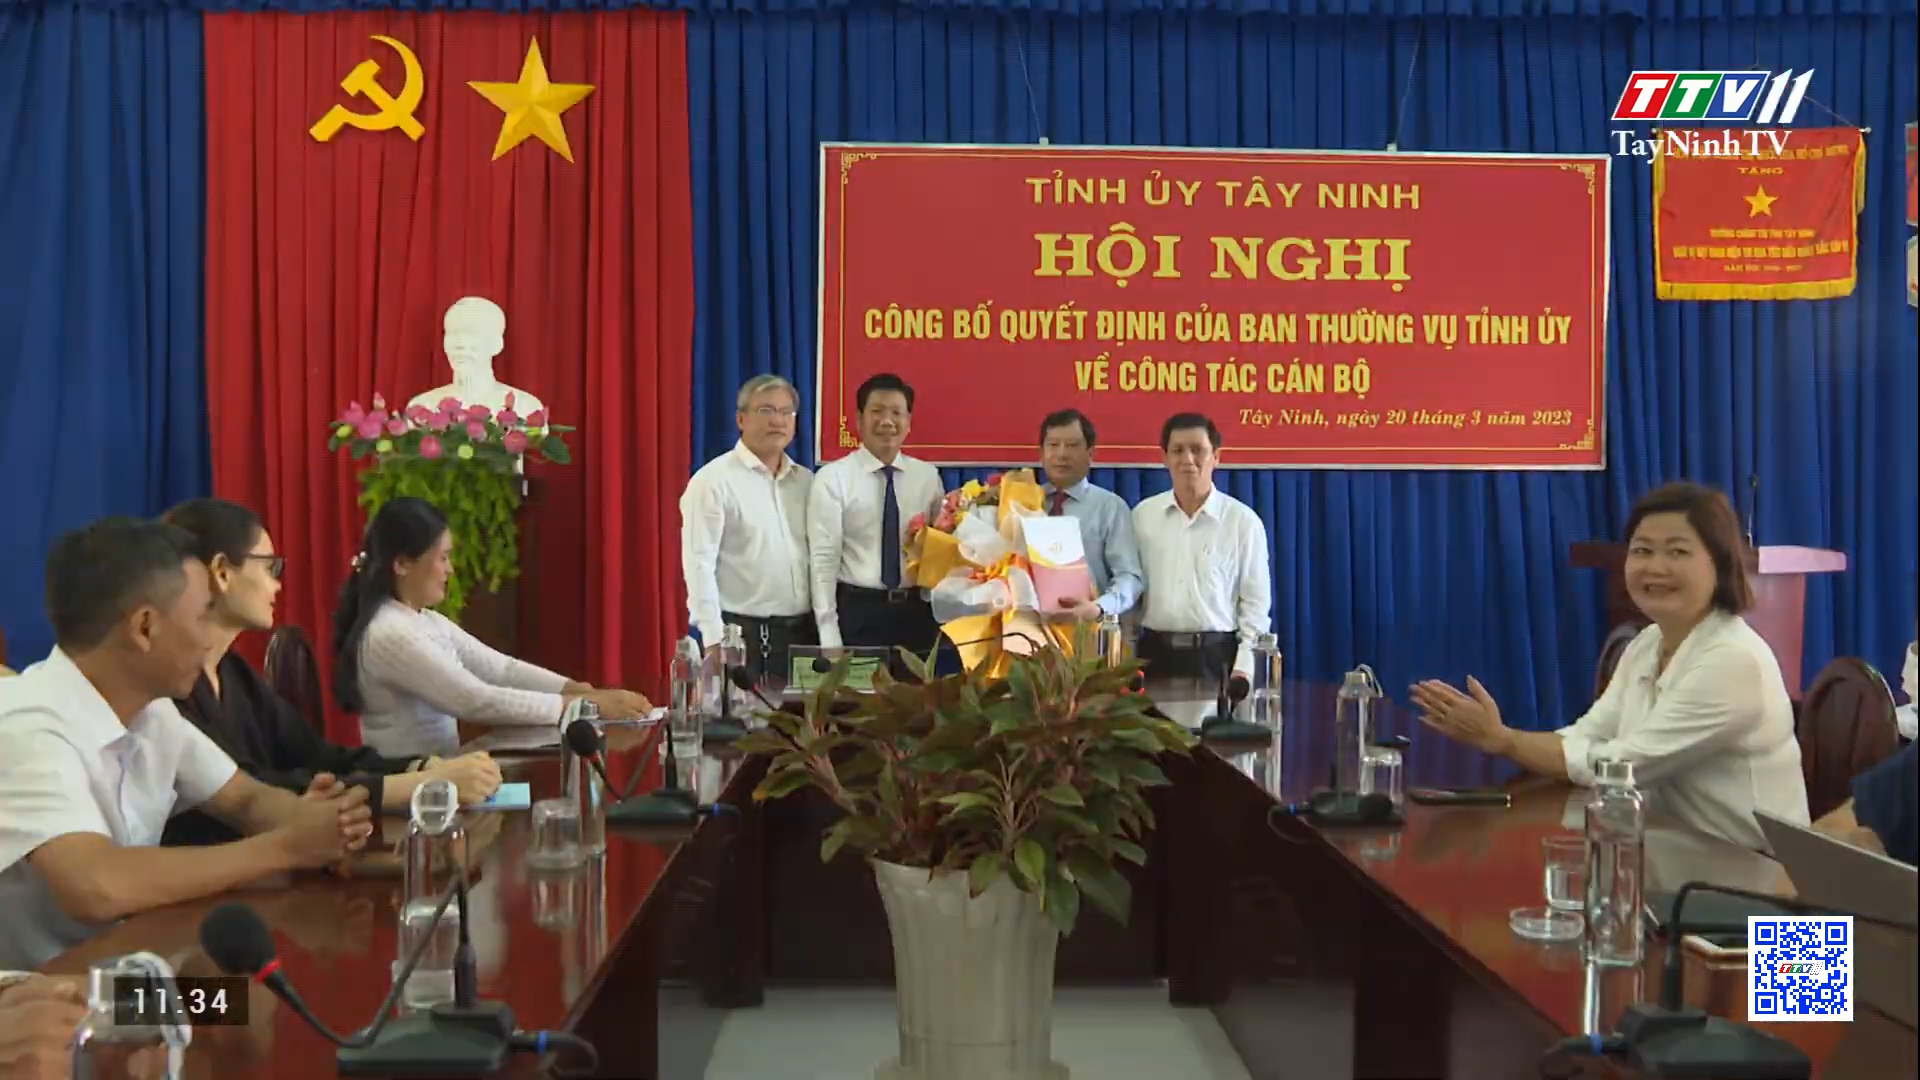 Bổ nhiệm Hiệu trường trường Chính trị tỉnh Tây Ninh | TayNinhTV